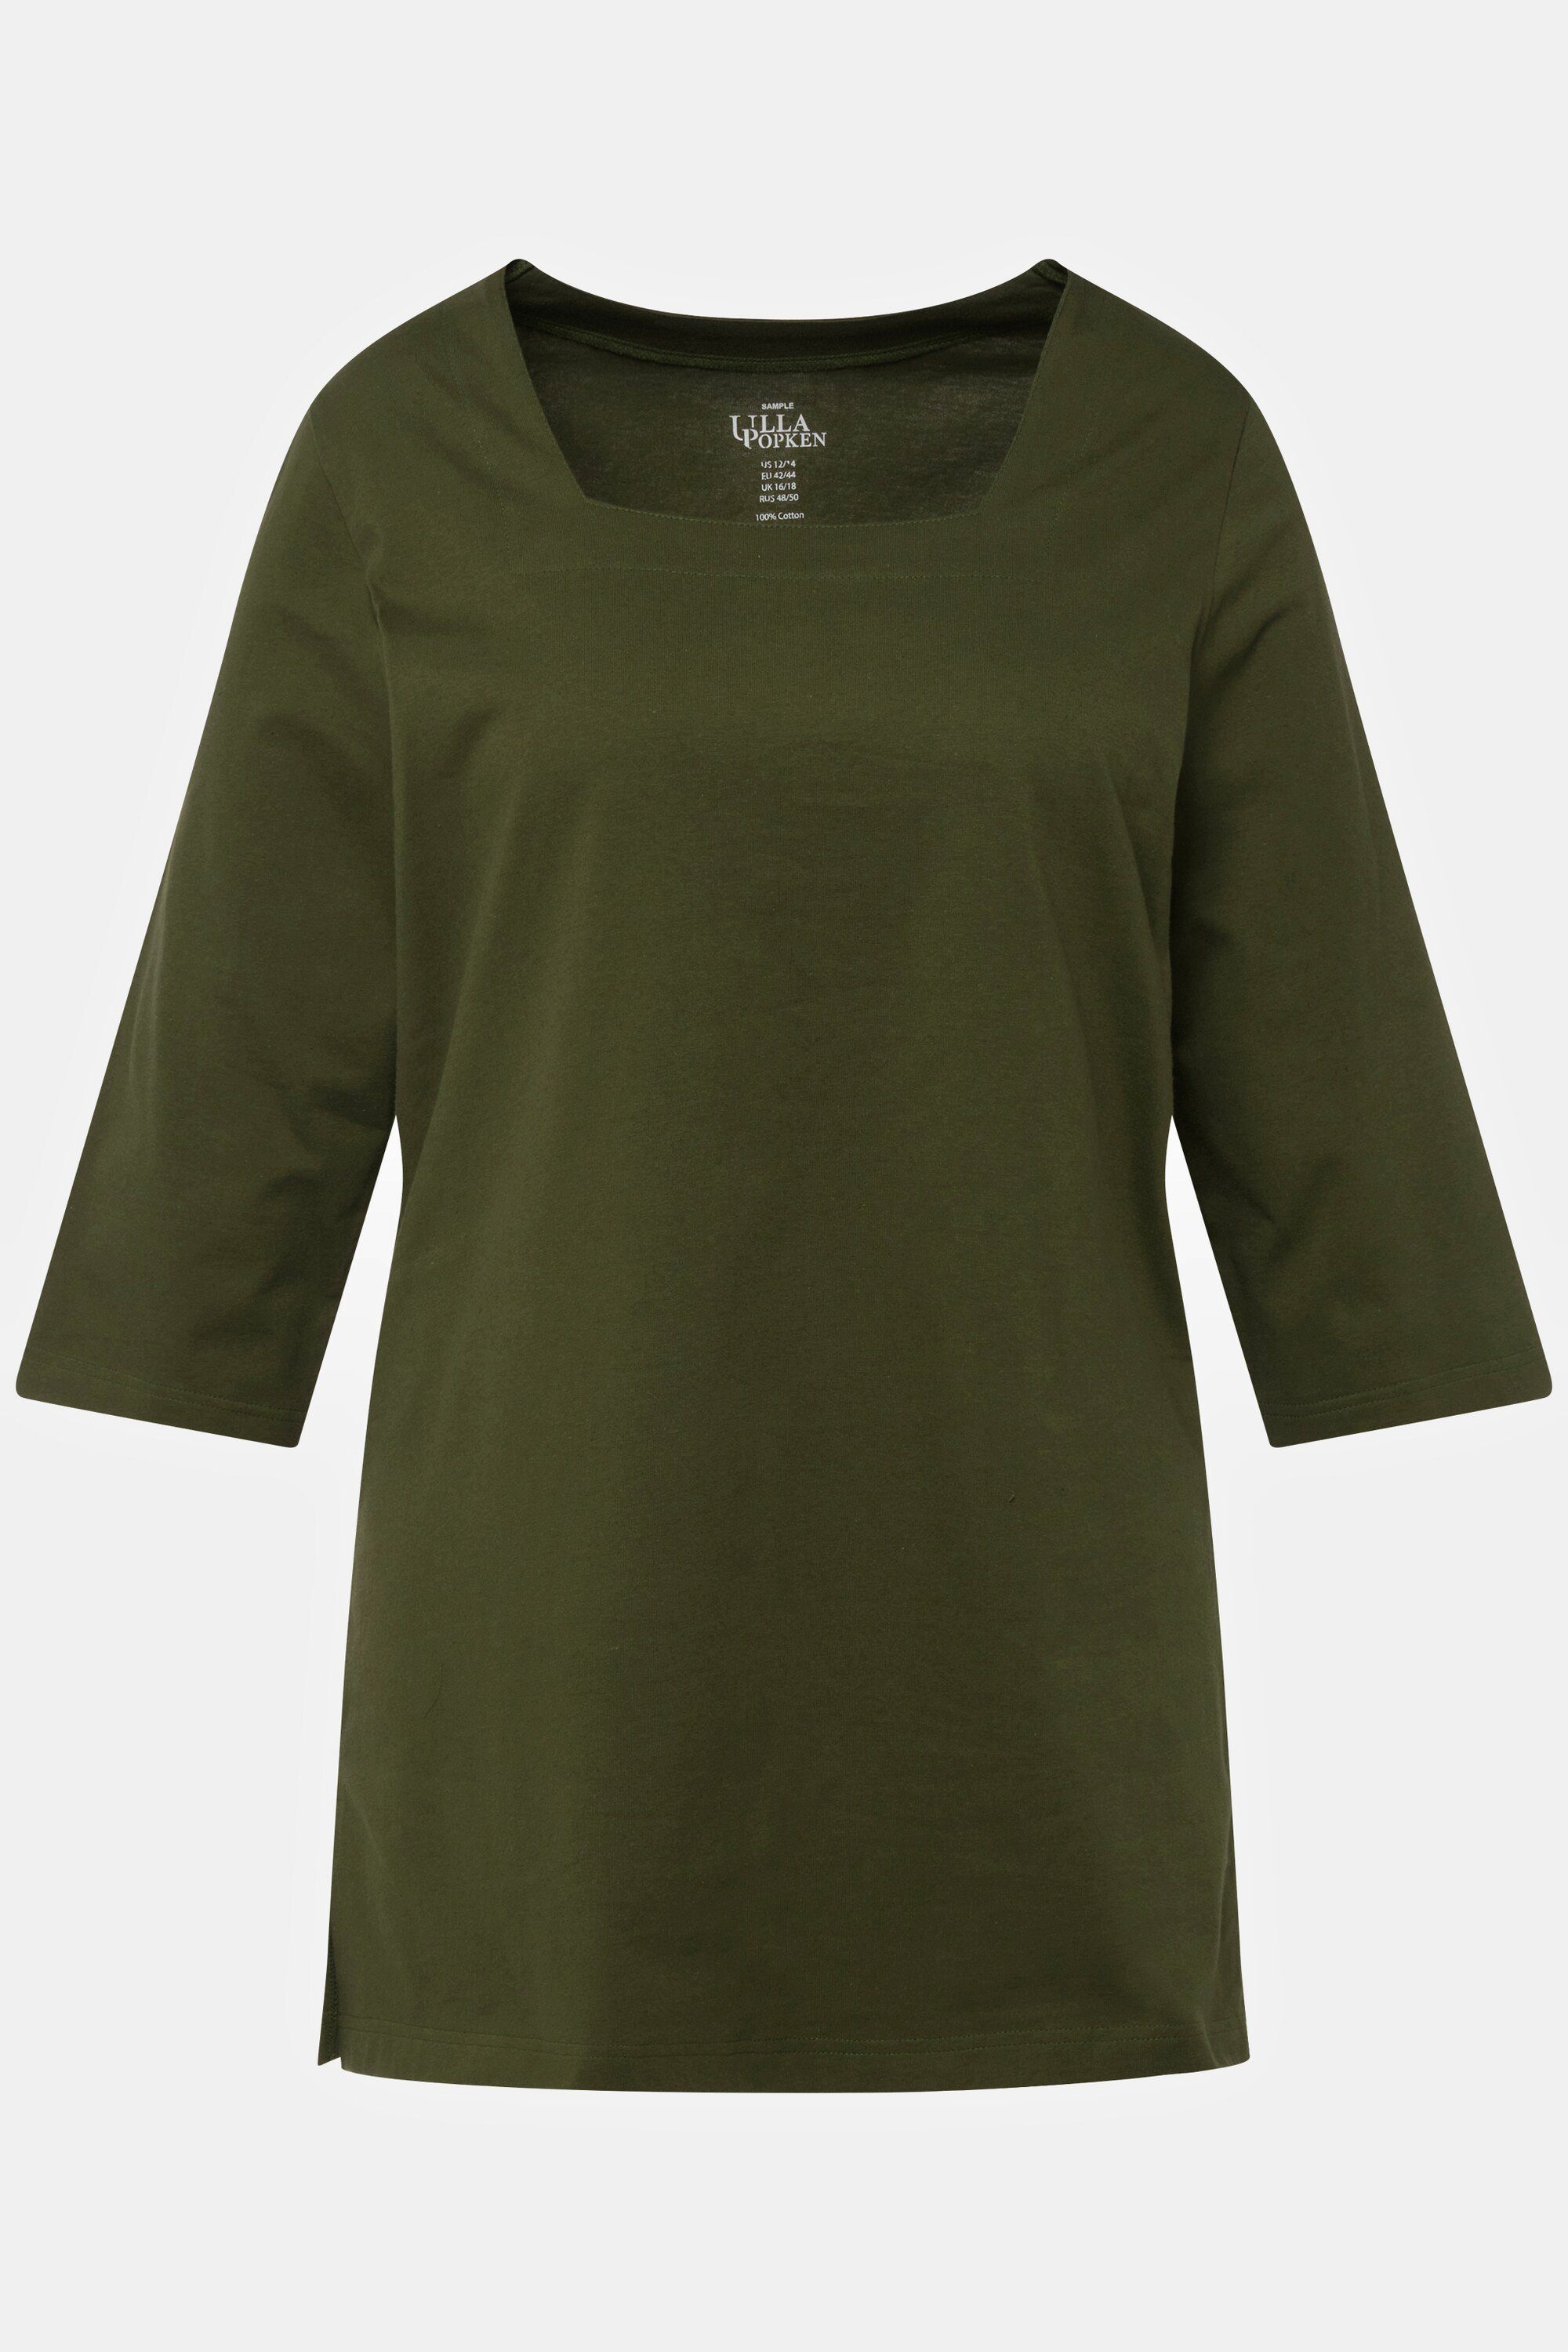 Longshirt olive A-Line Carree-Ausschnitt 3/4-Arm Ulla Popken Longshirt